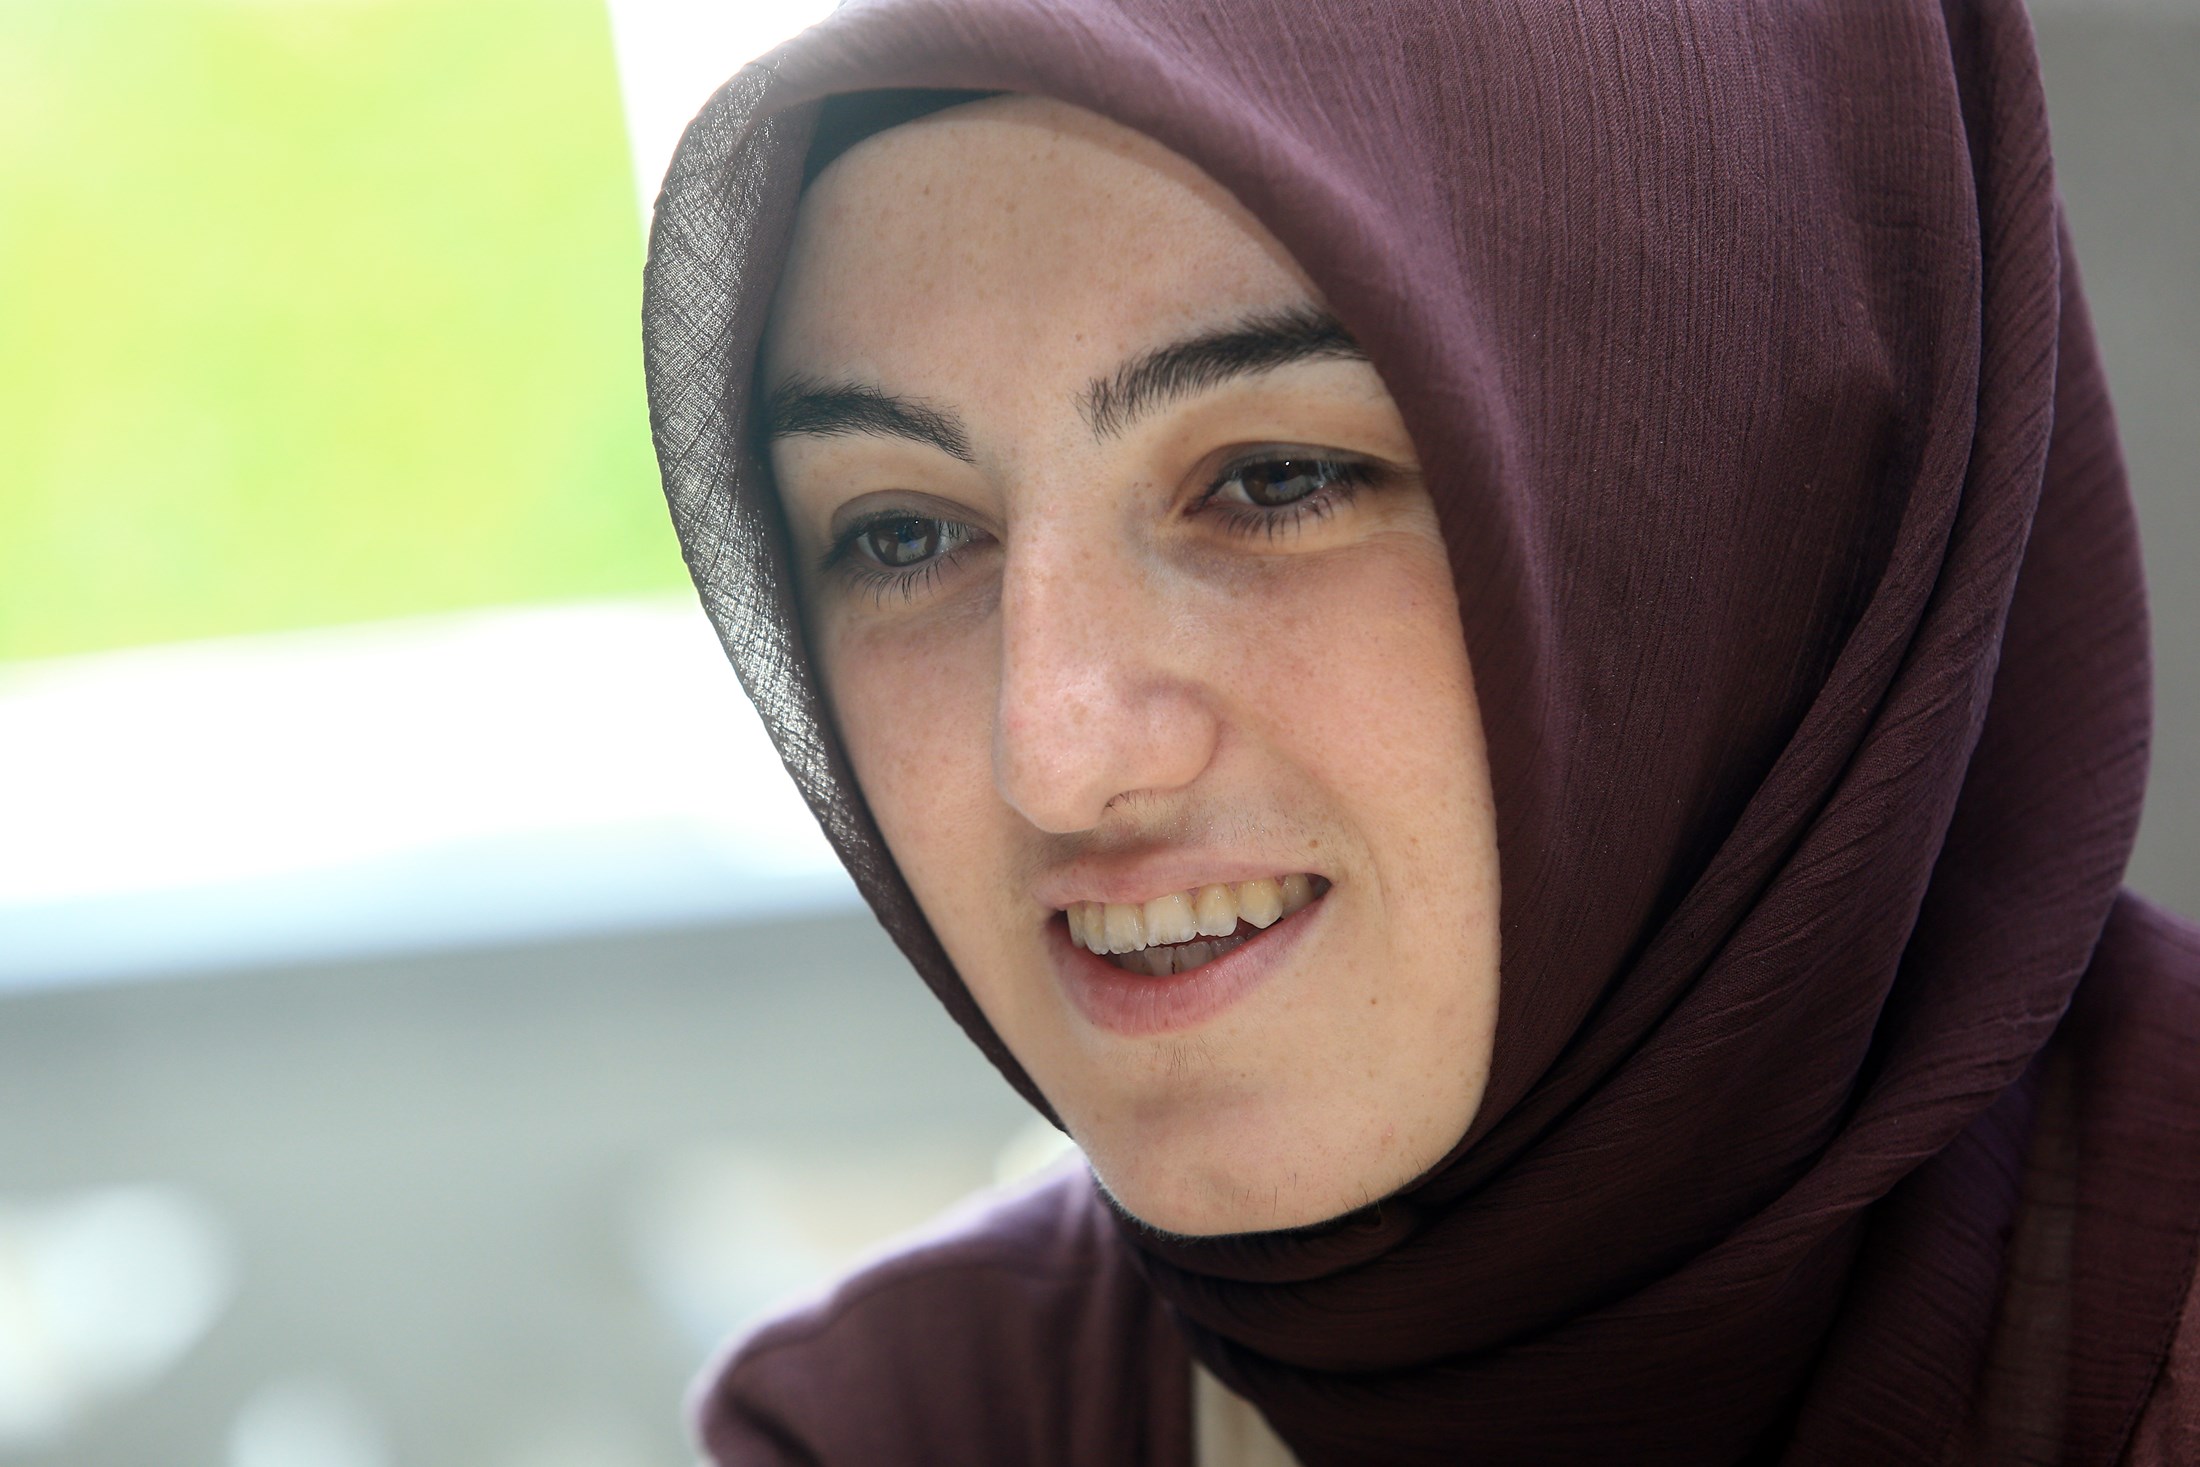 來自土耳其的Esra Cifci，目前在馬來西亞國際伊斯蘭大學修讀博士課程。她的博士論文研究了伊斯蘭教與中華哲學的比較。